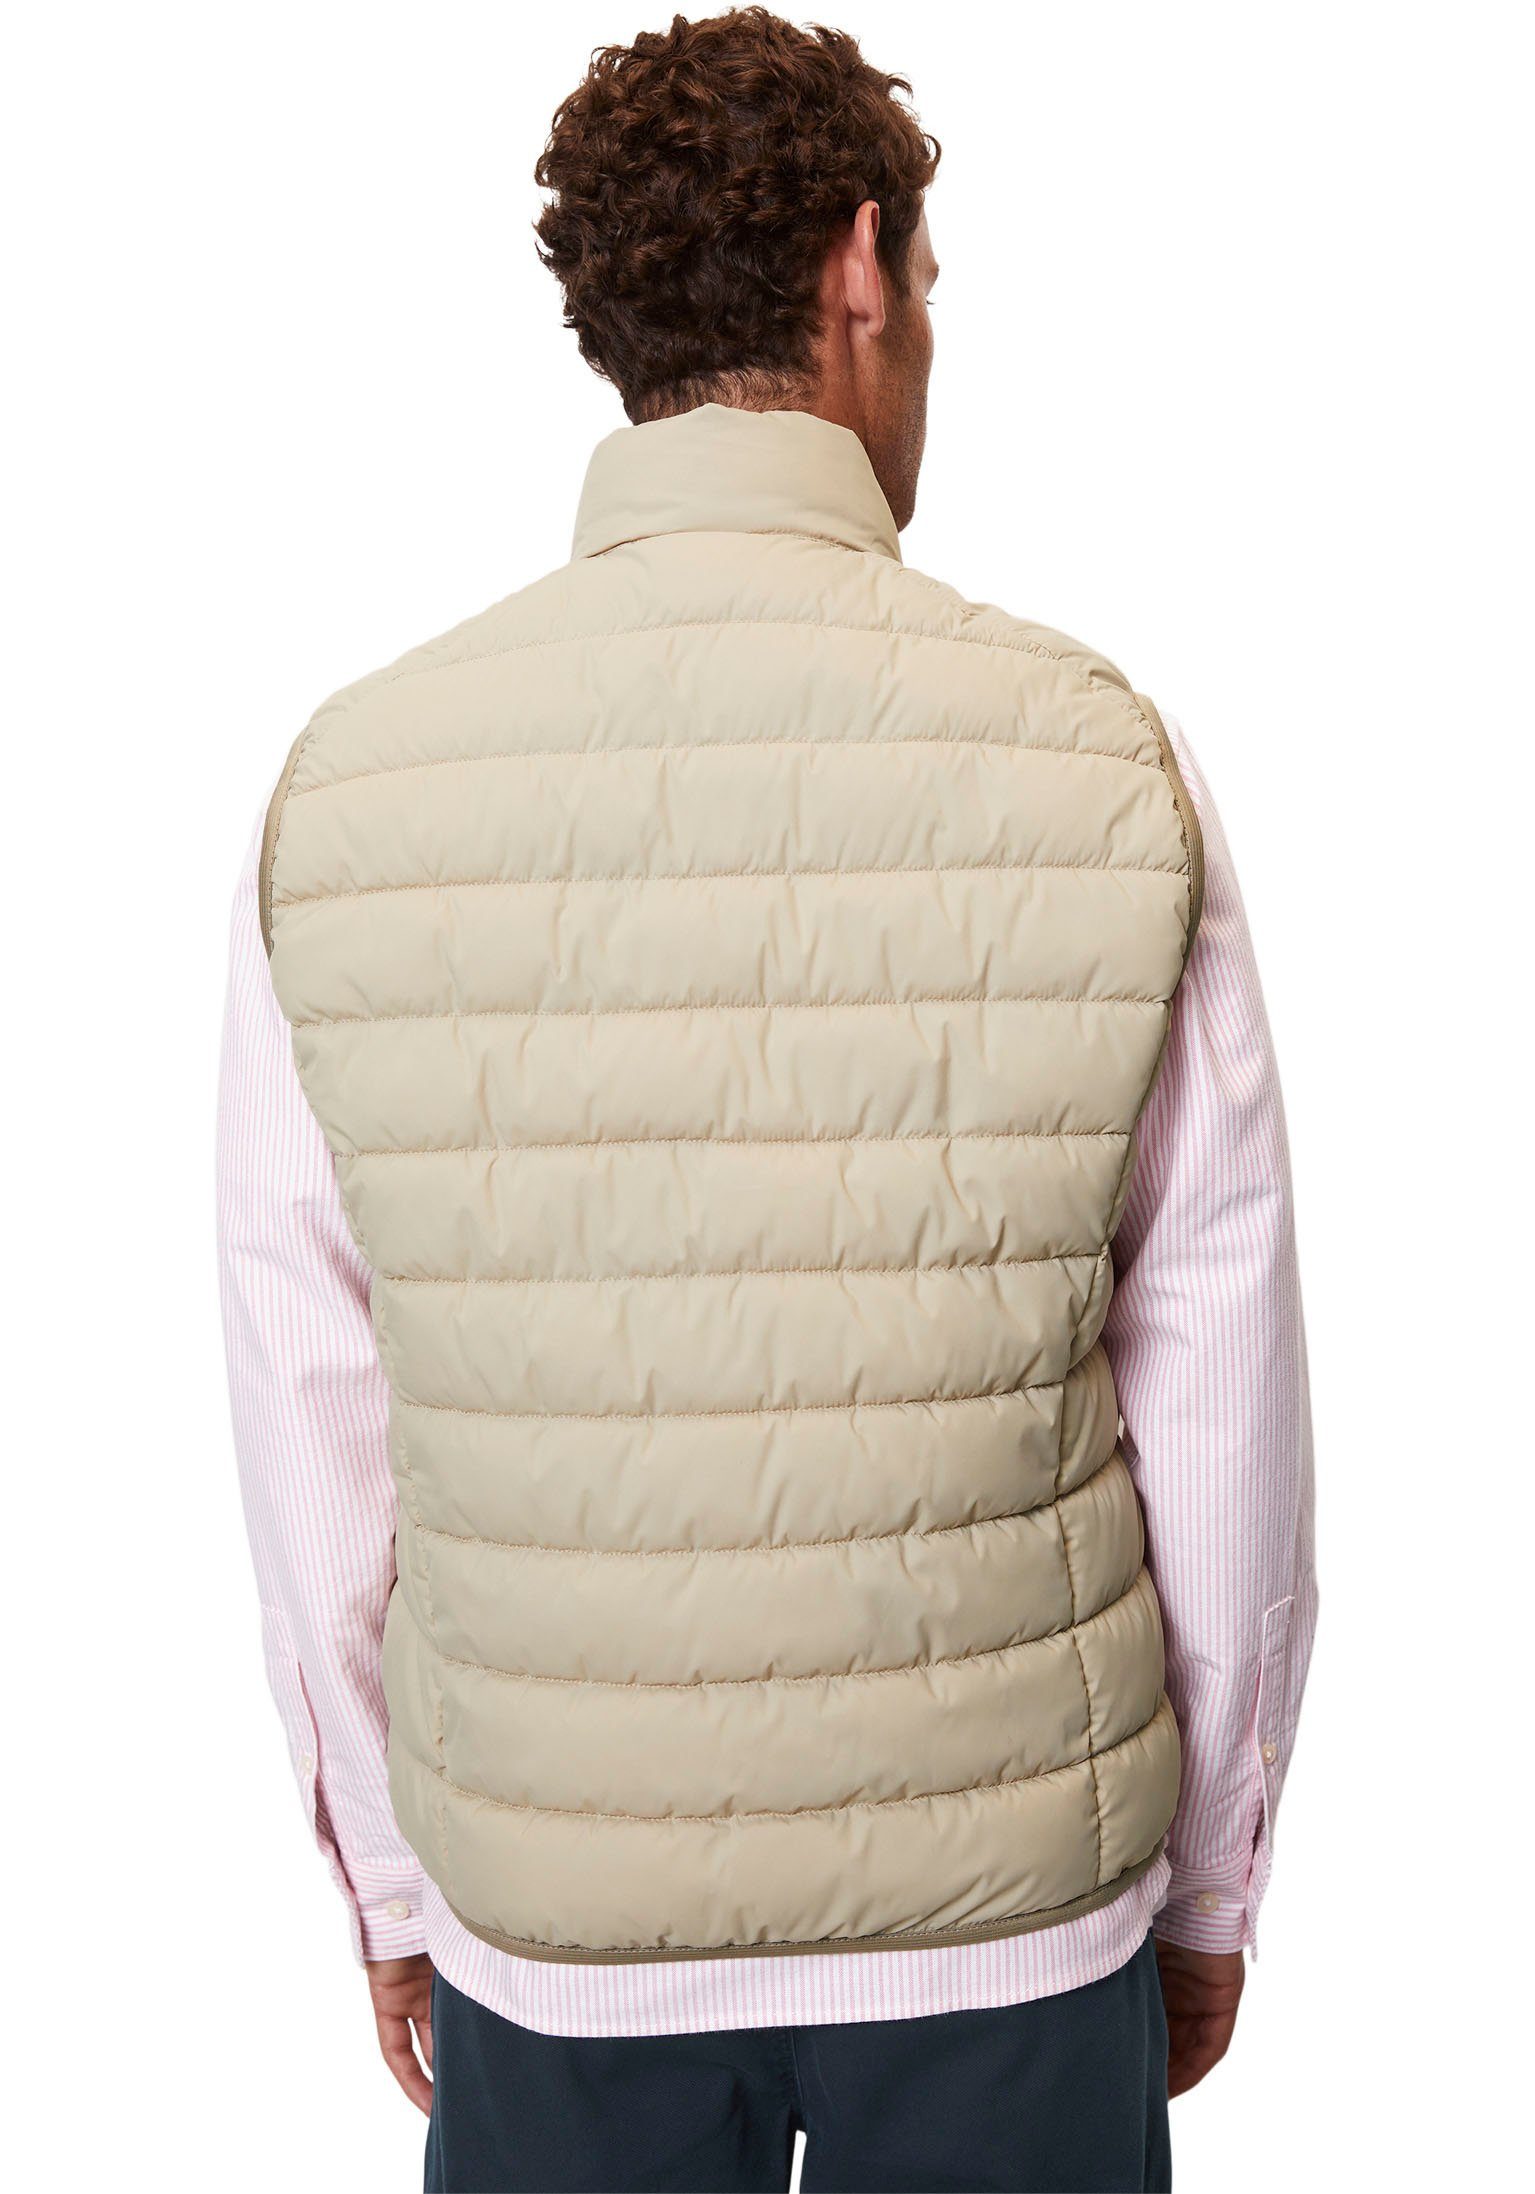 wasserabweisender Steppweste O'Polo jonesboro collar mit Vest, Marc cream sdnd, Oberfläche stand-up